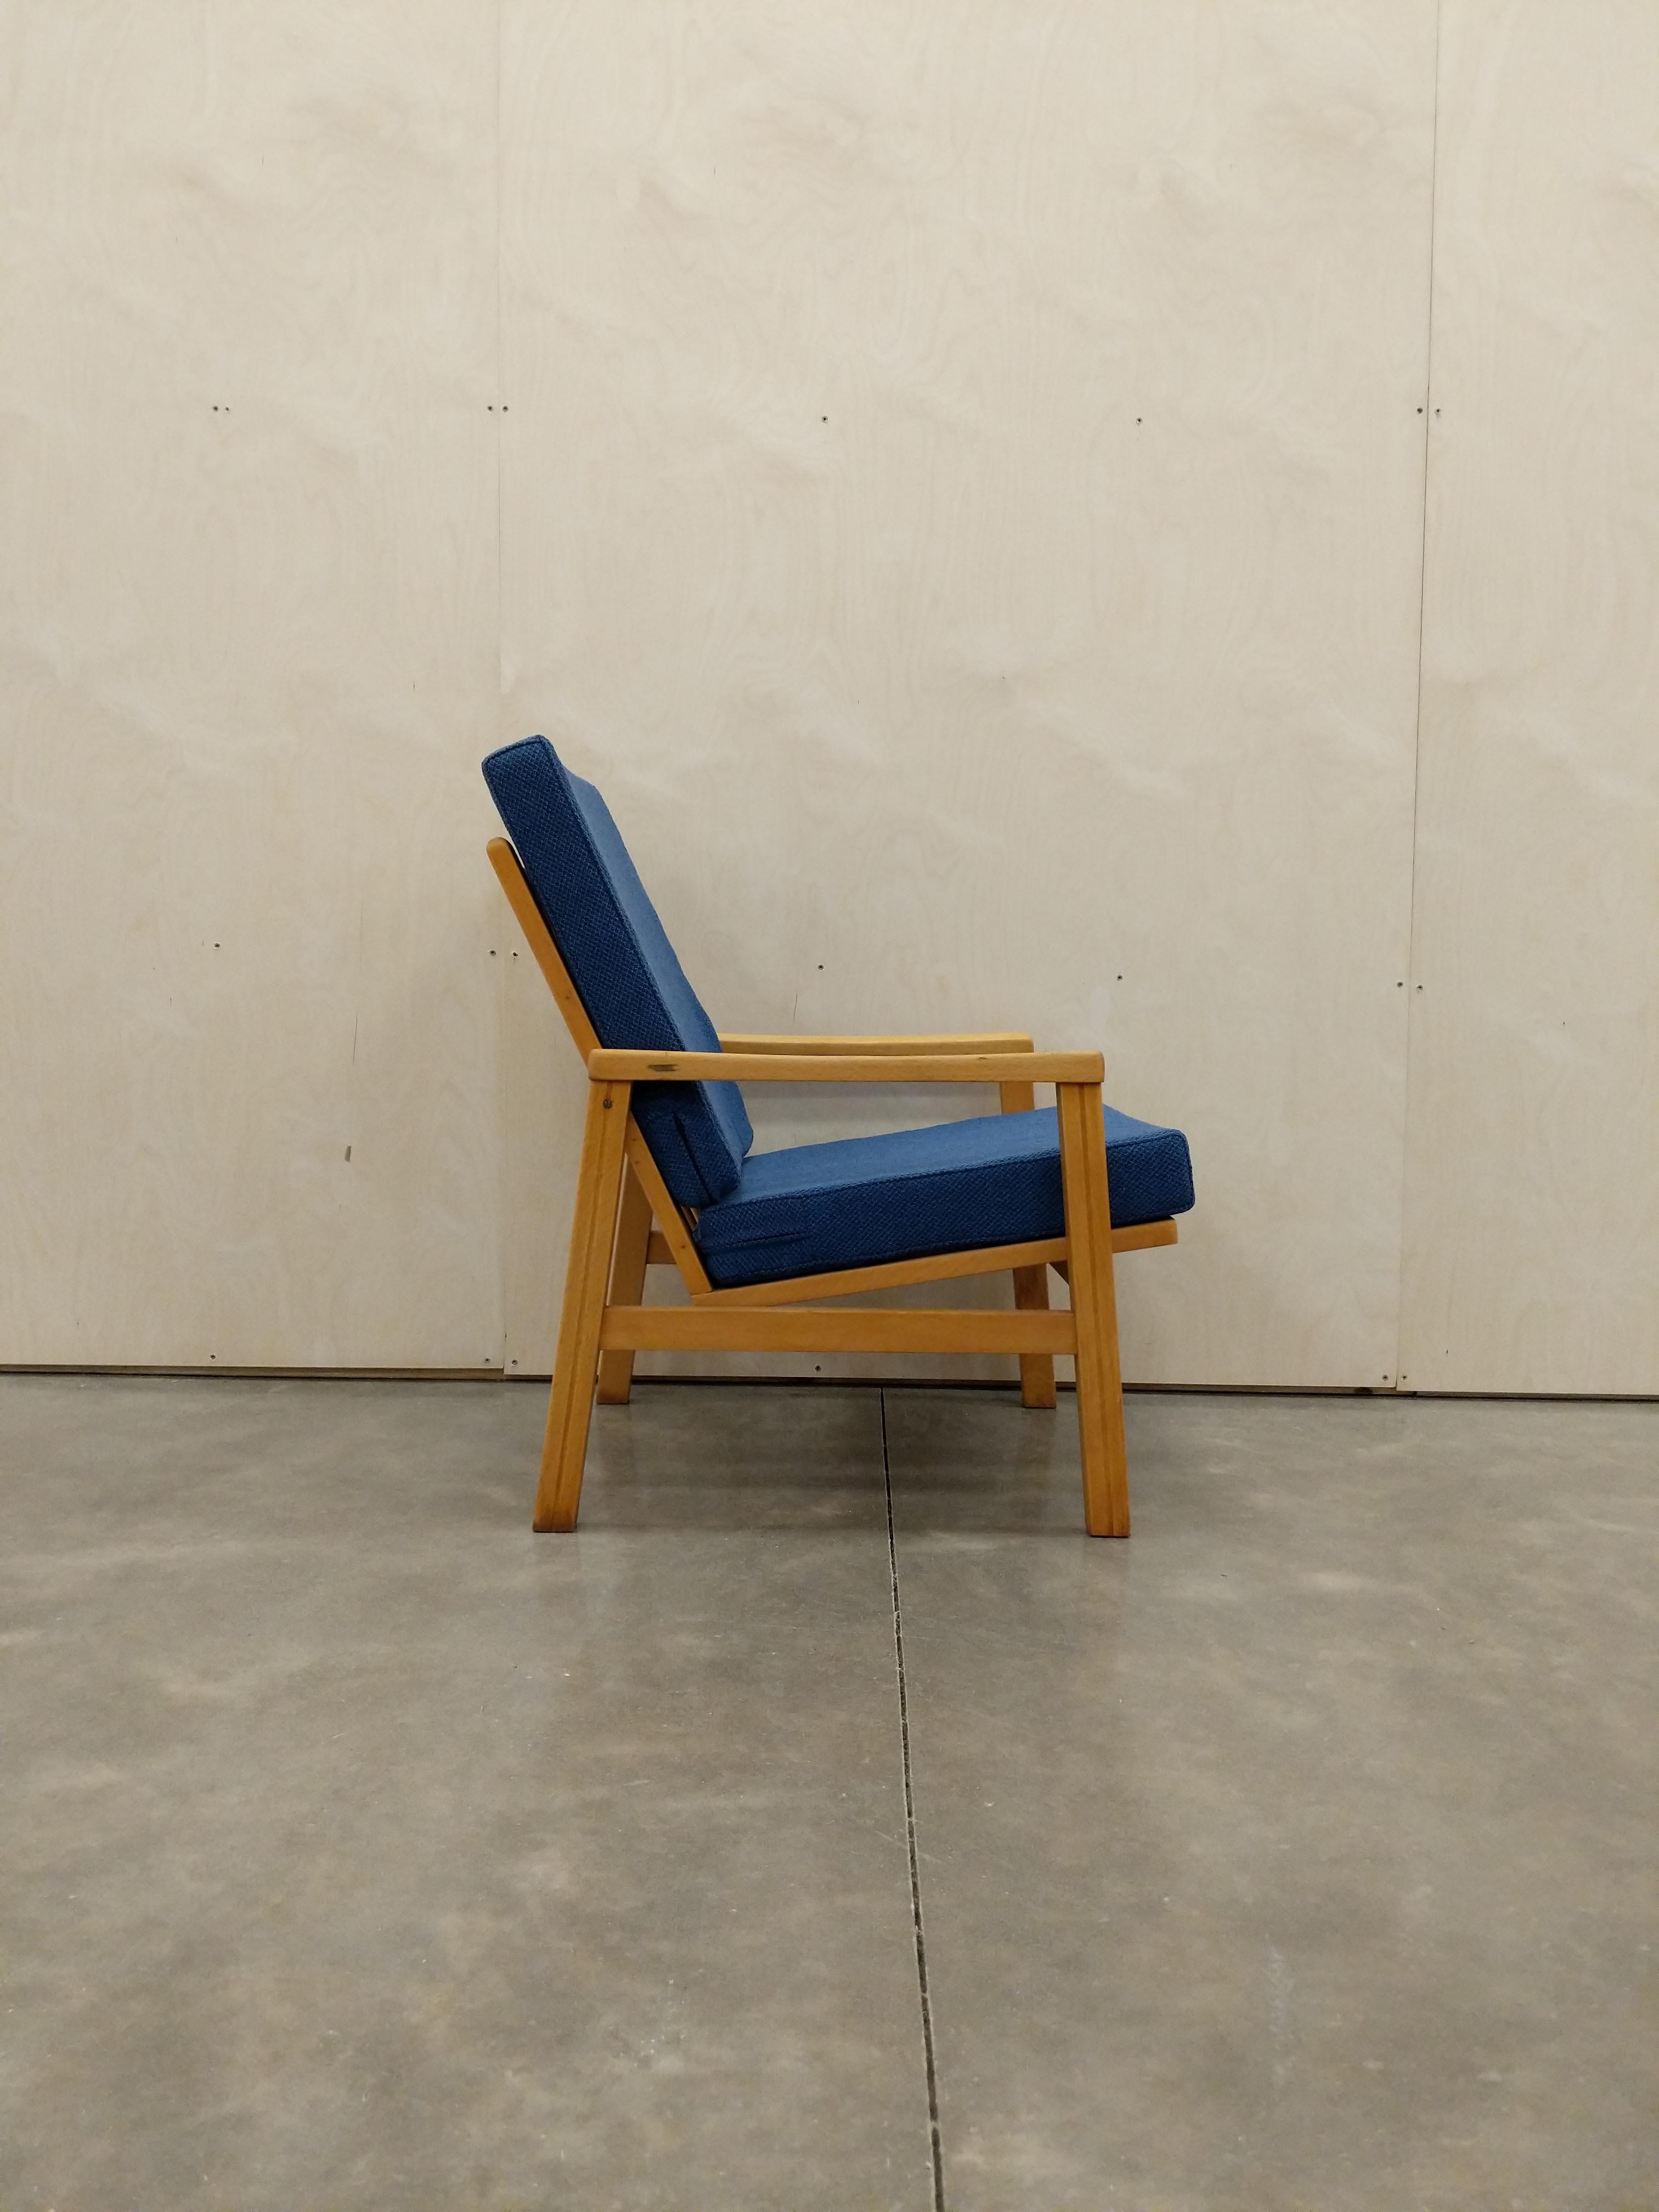 Authentique chaise longue tchèque vintage du milieu du siècle dernier.

Nous avons utilisé le tissu 